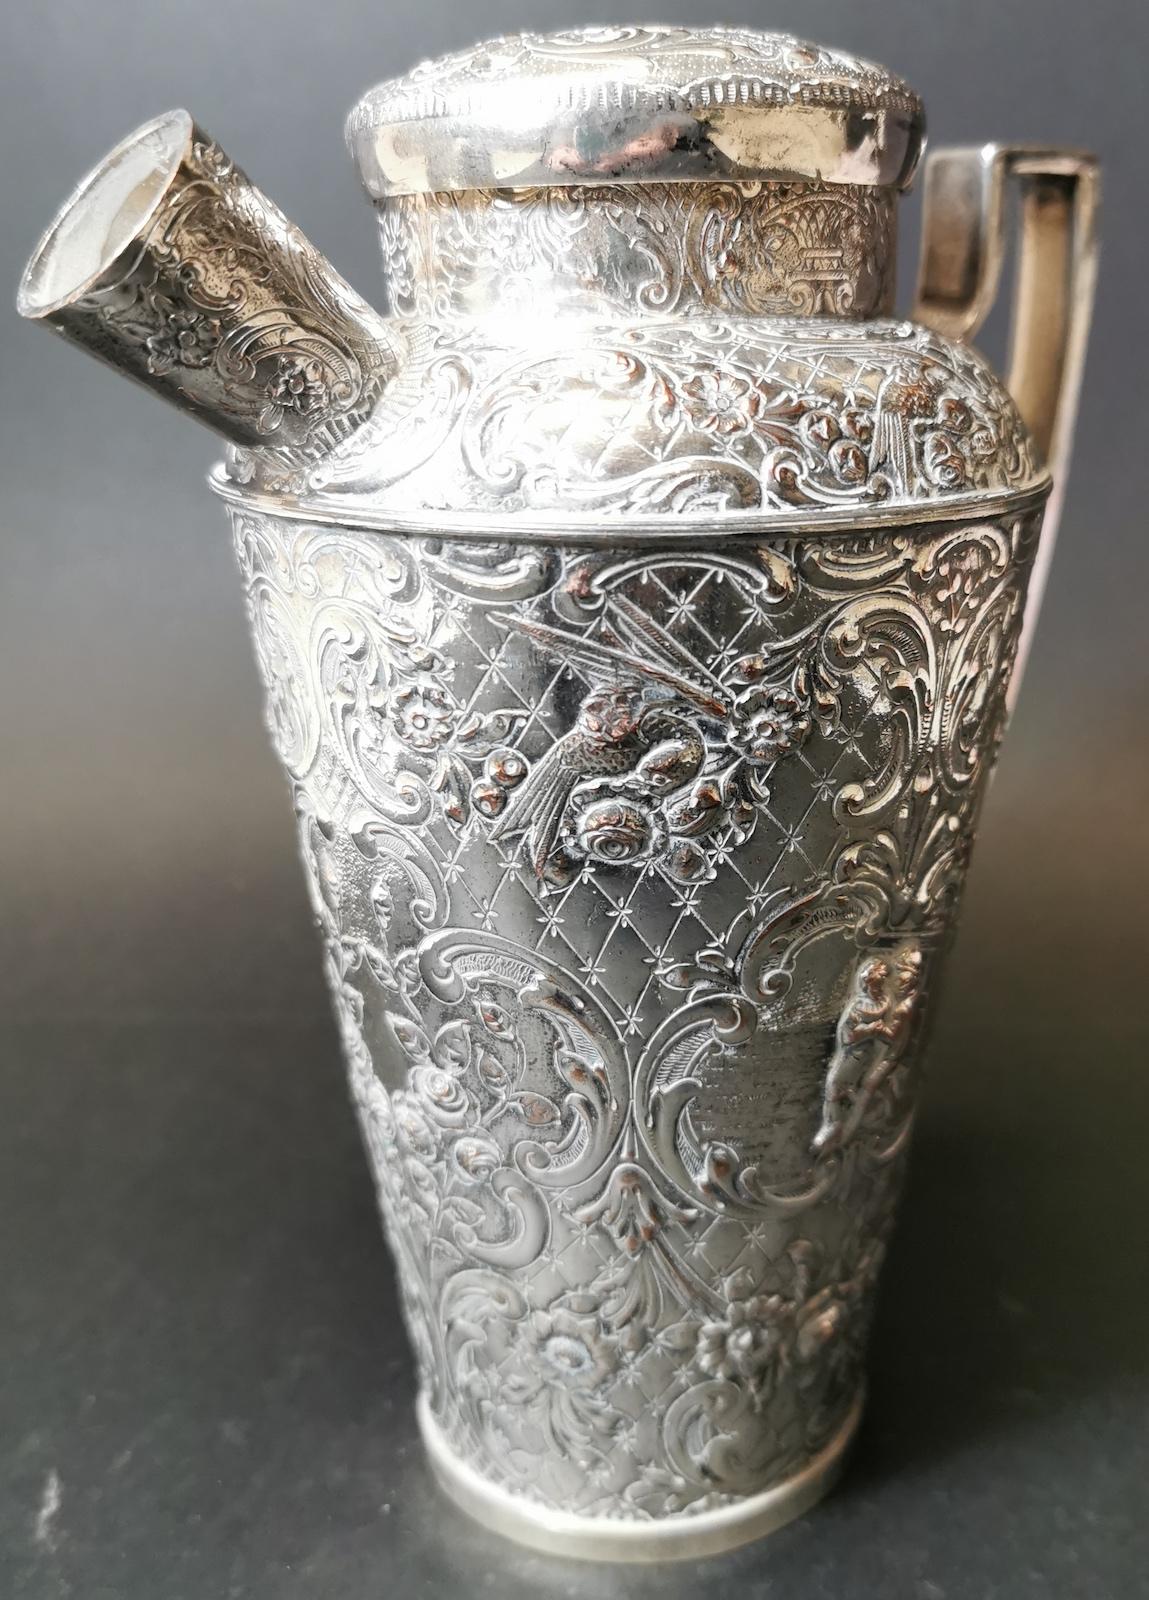 Dutch Colonial Dutch Silver, Ewer or Jug For Sale